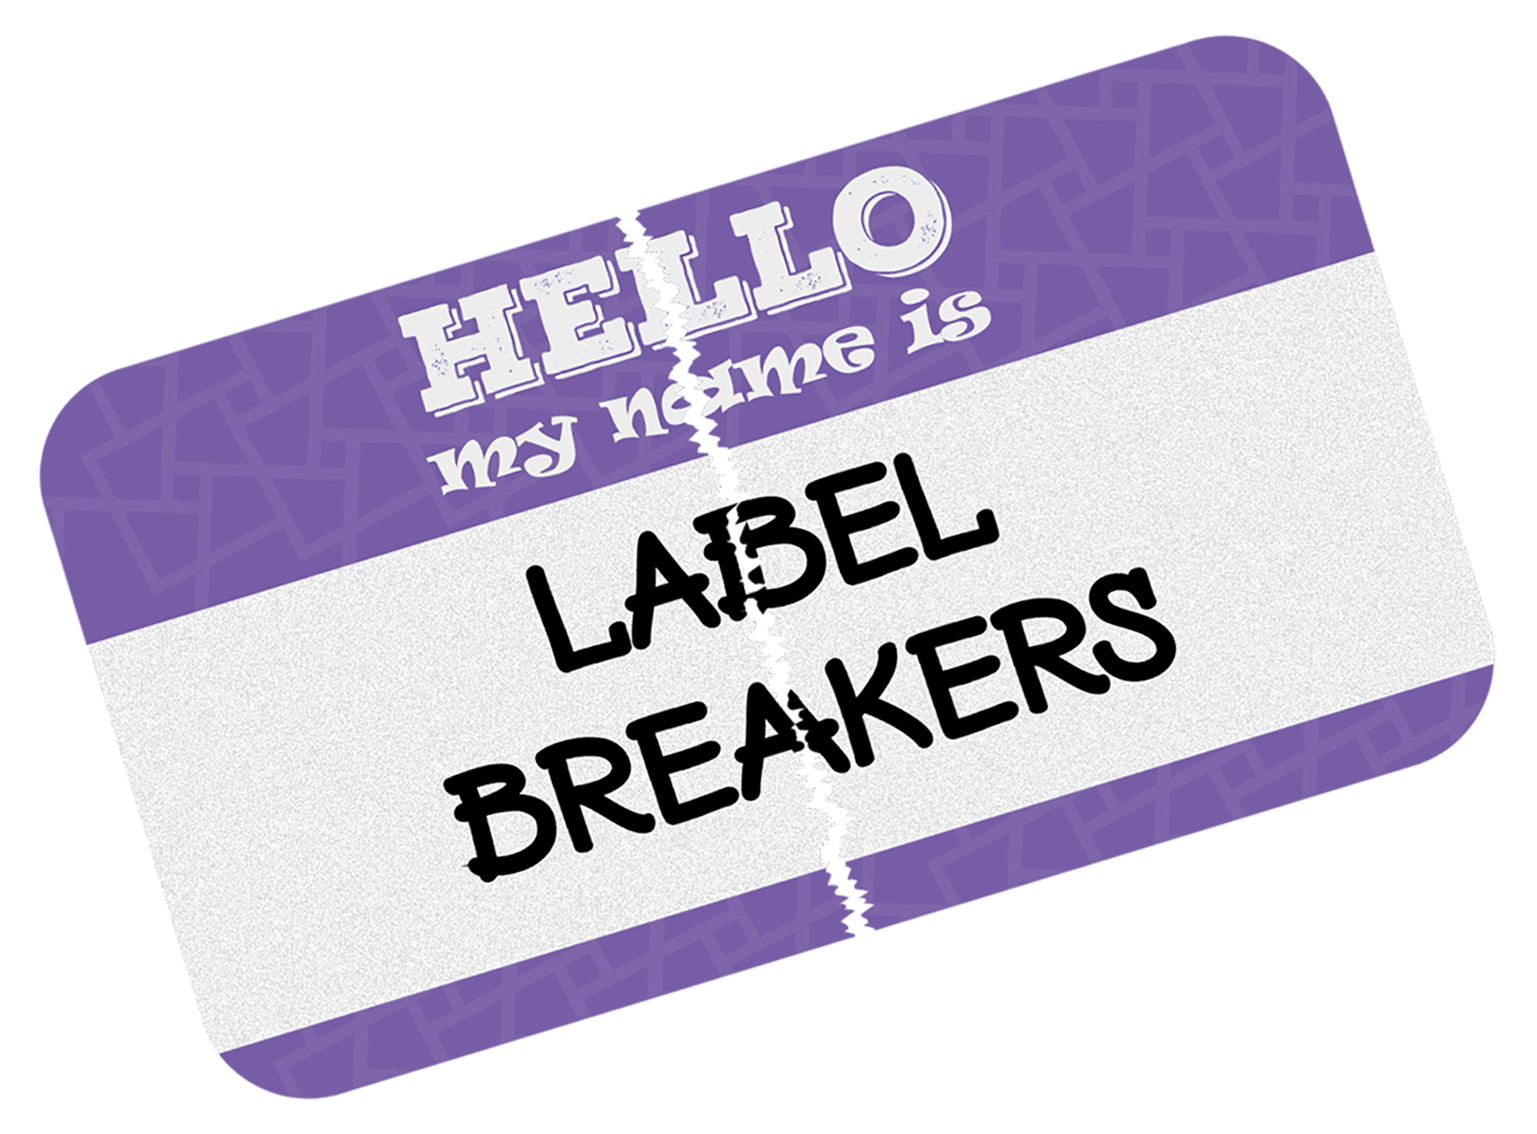 Label Breakers